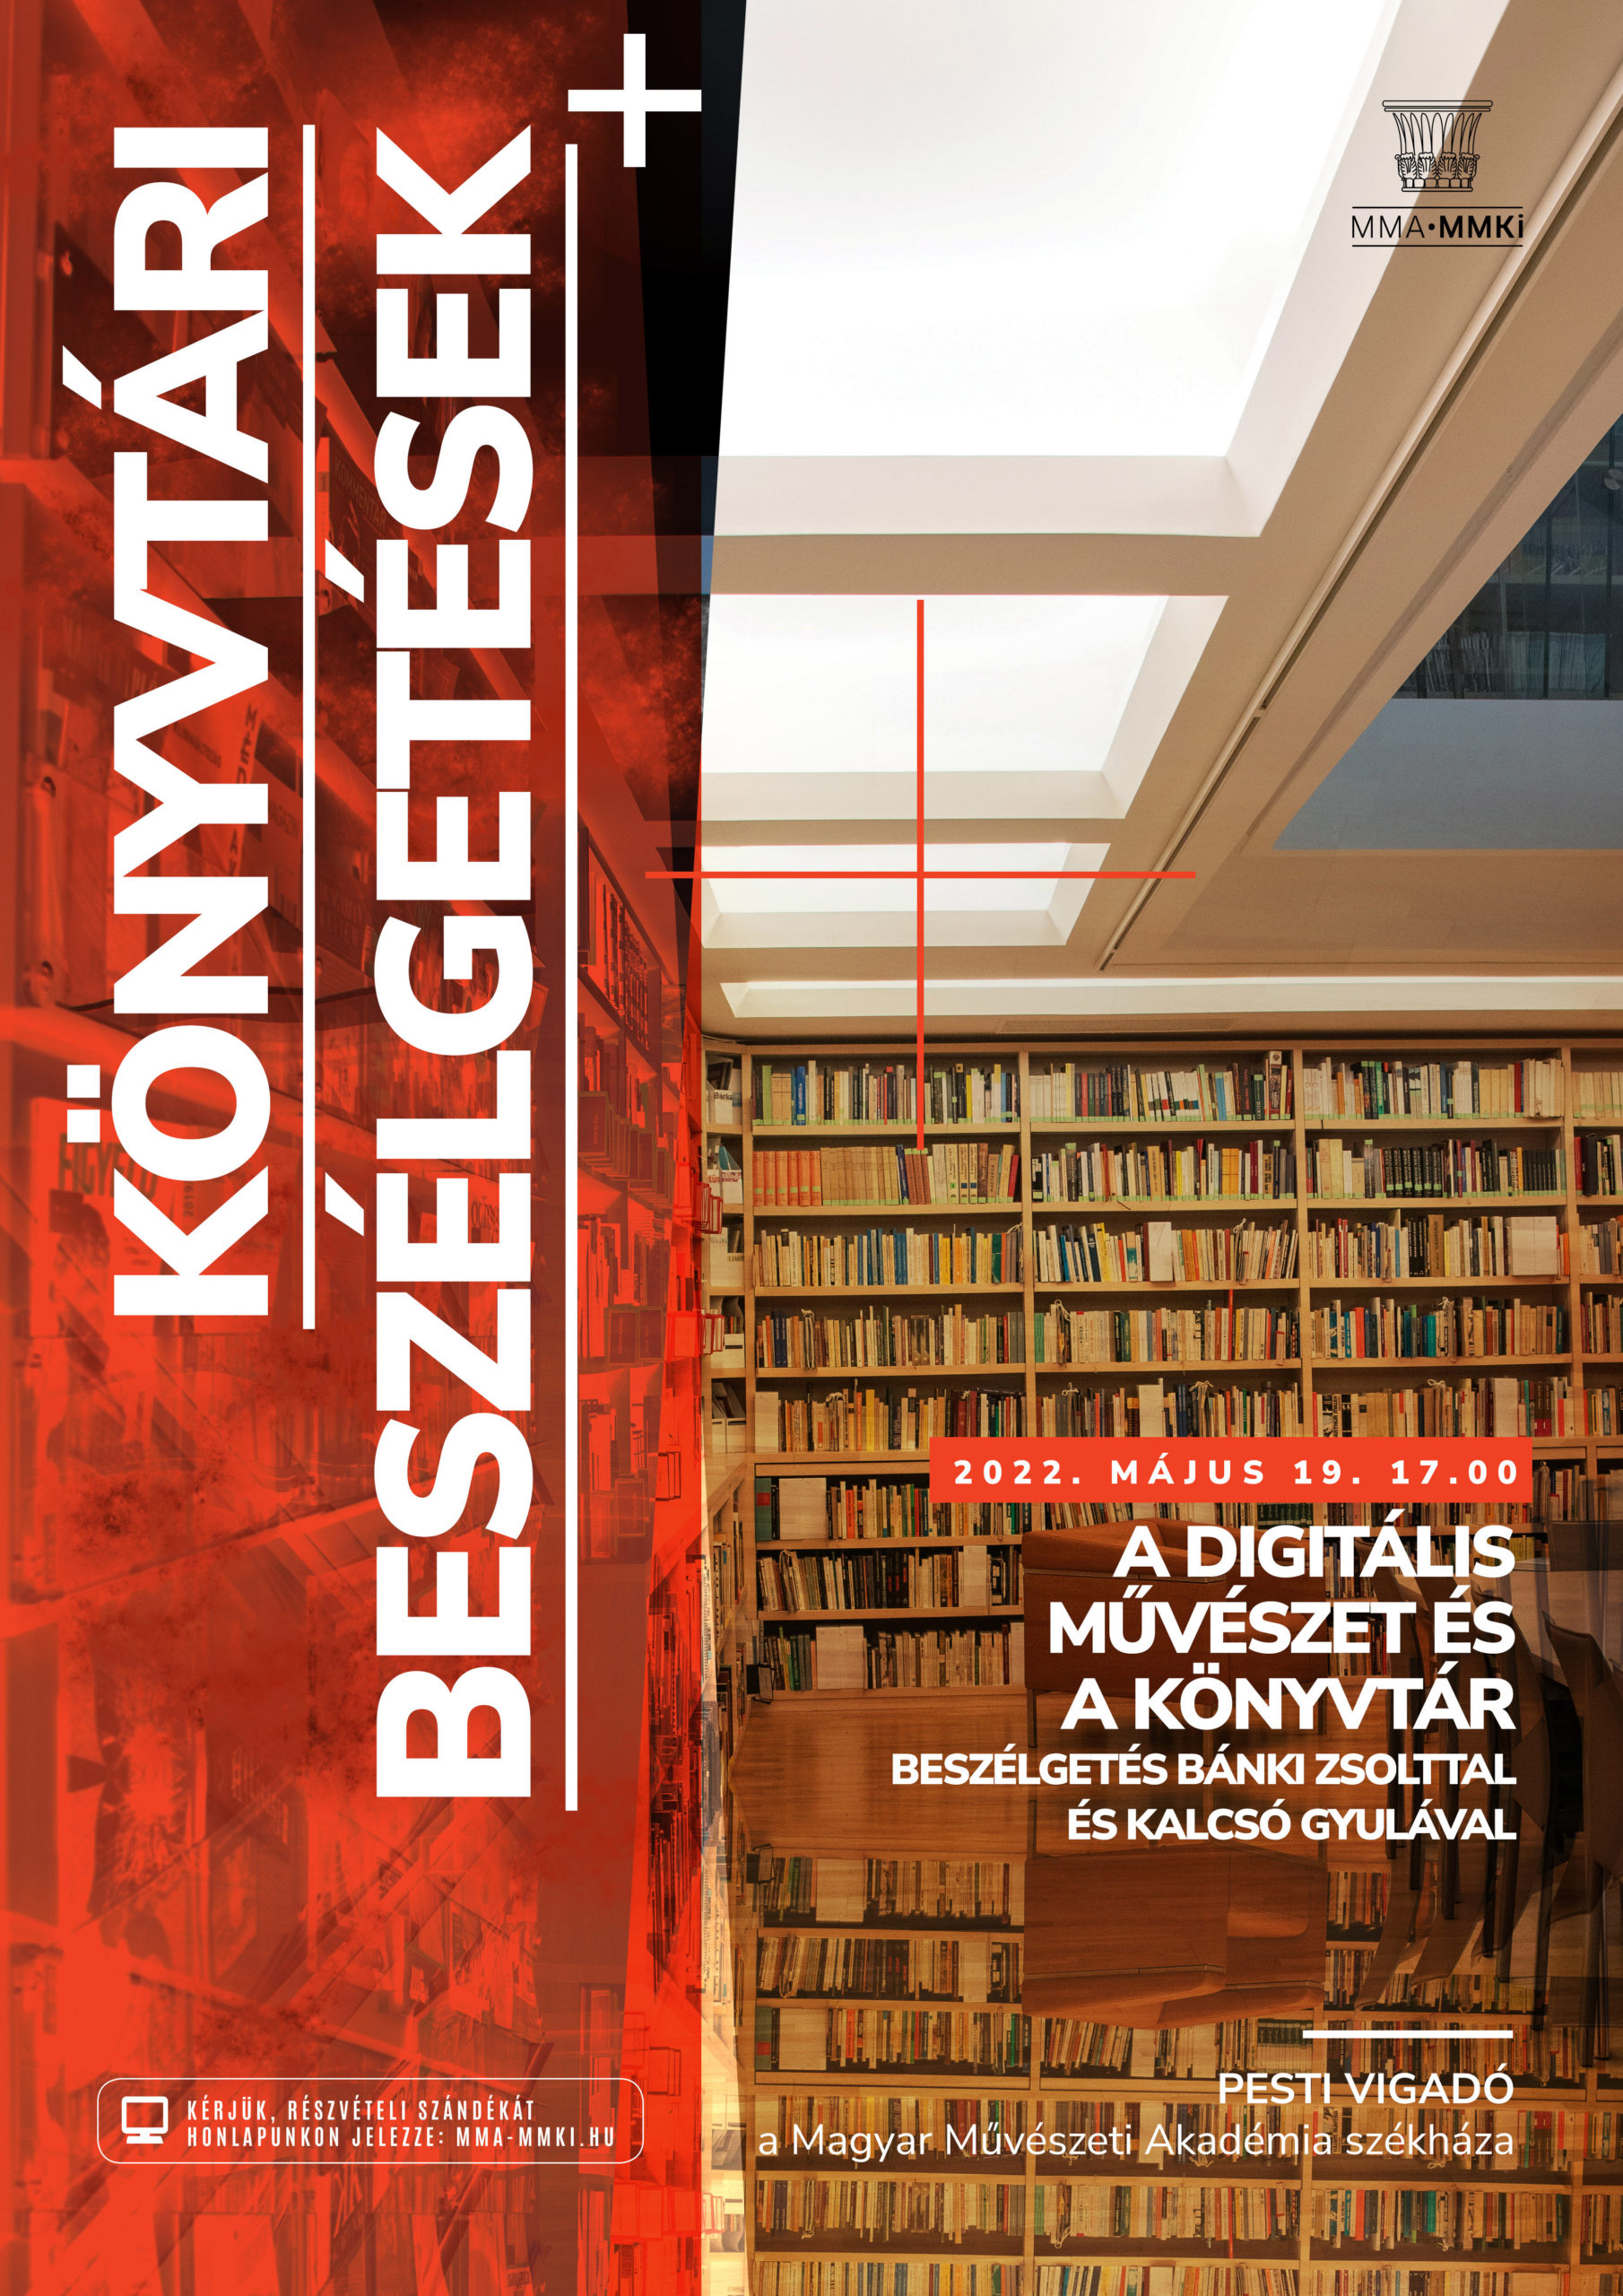 Könyvtári beszélgetések – A digitális művészet és könyvtár – Beszélgetés Bánki Zsolttal és Kalcsó Gyulával